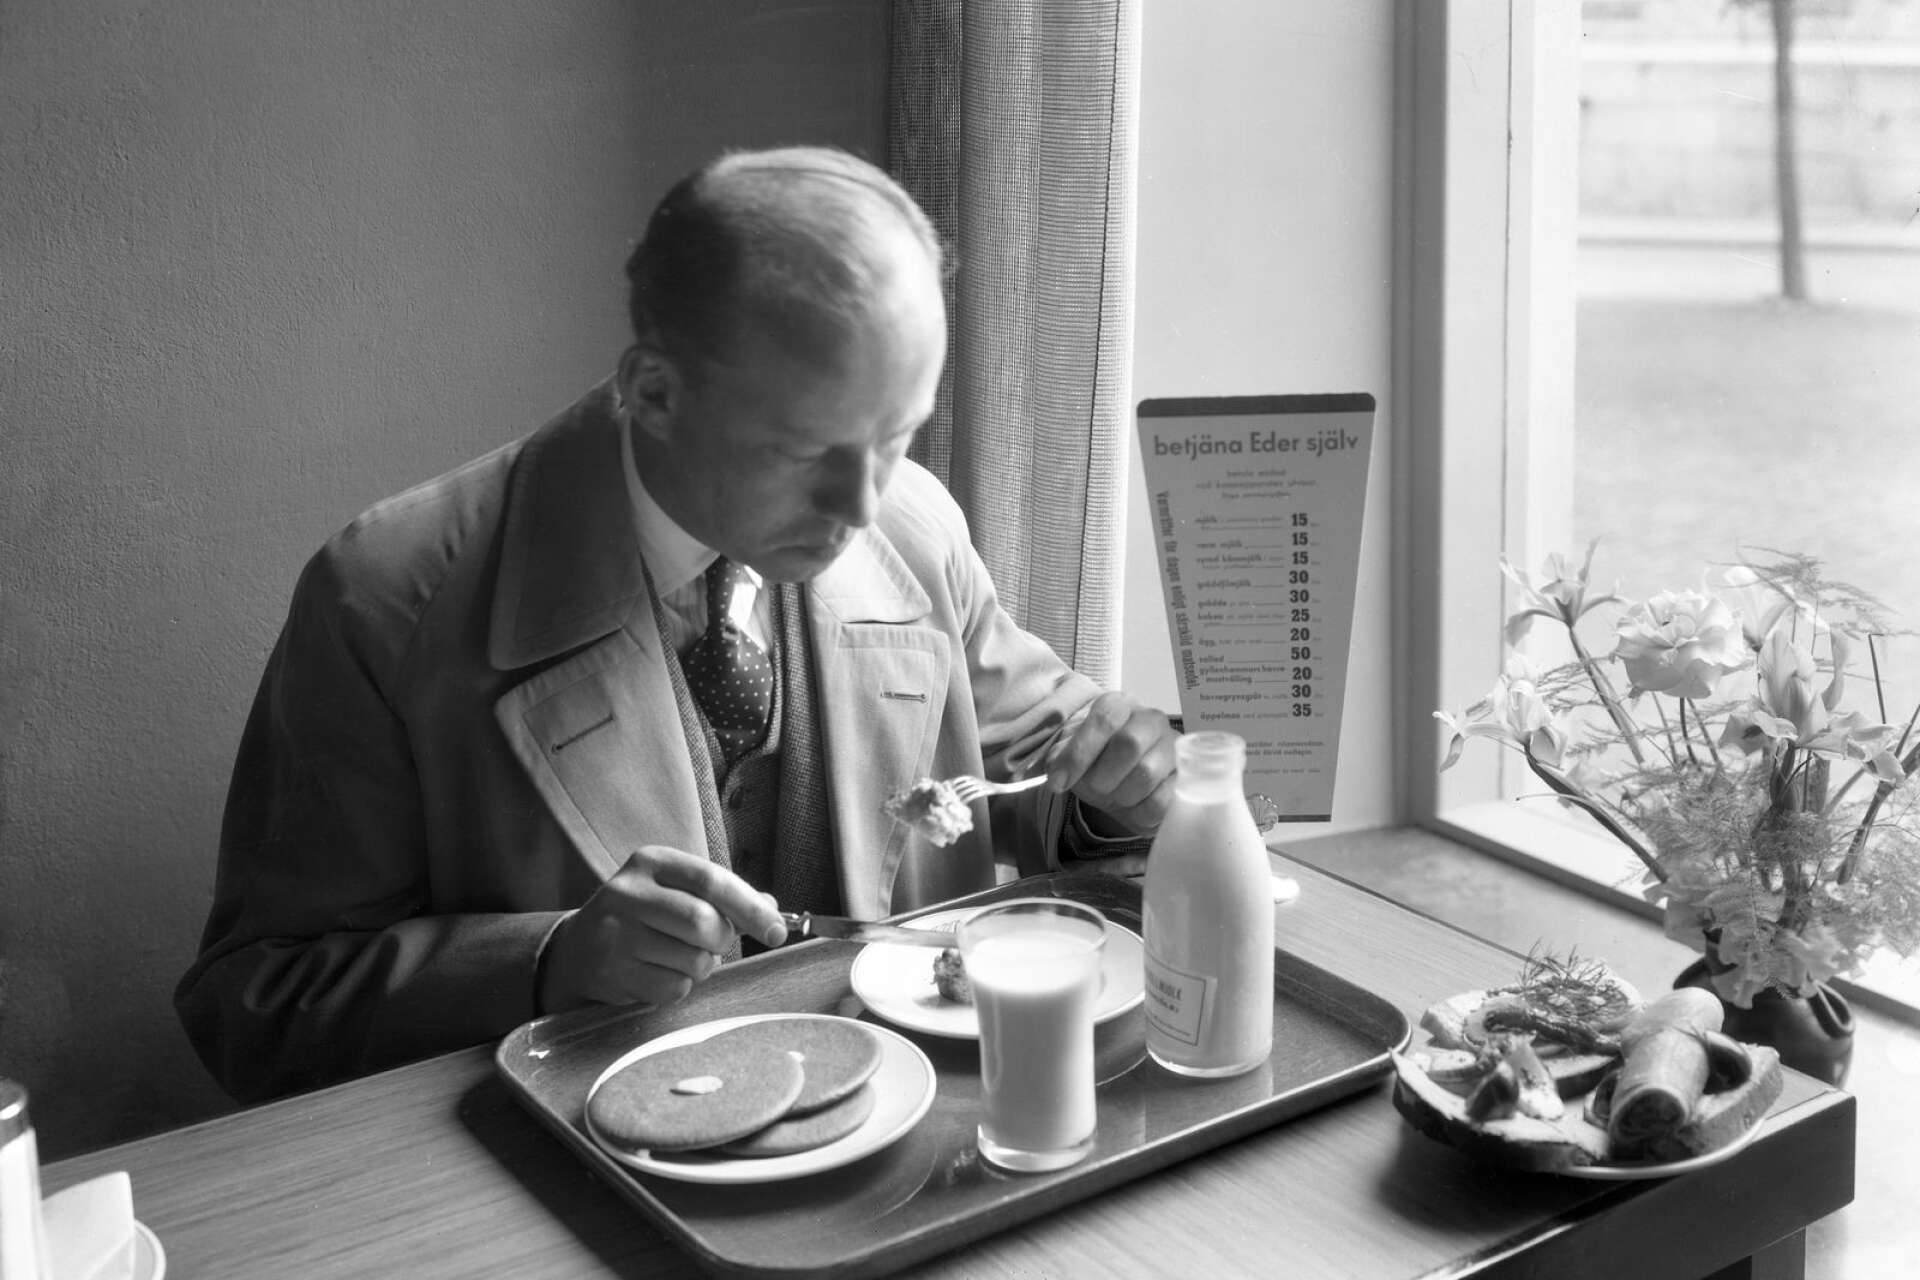 En gäst som äter en rejäl frukost med smörgåsar, plättar och mjölk. Bilden togs 1935.